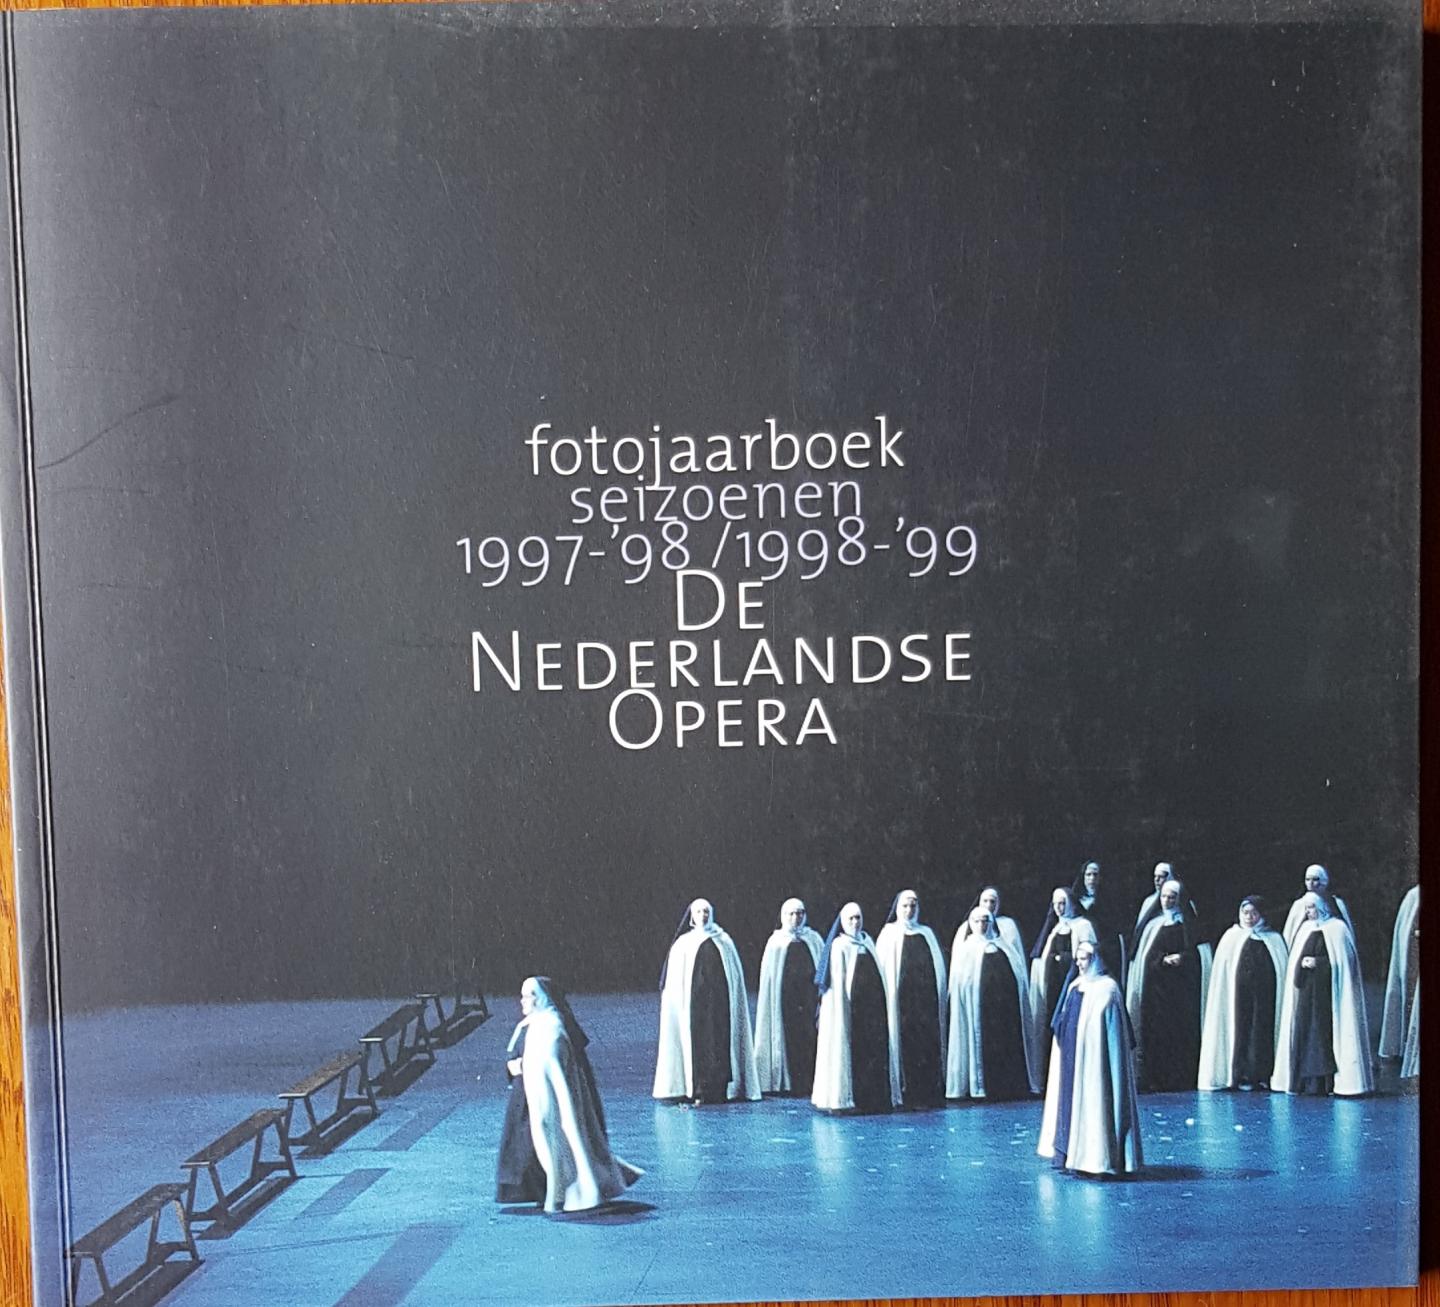 Redactie - Fotojaarboek seizoenen 1997-98 / 1998-99 De Nederlandse Opera